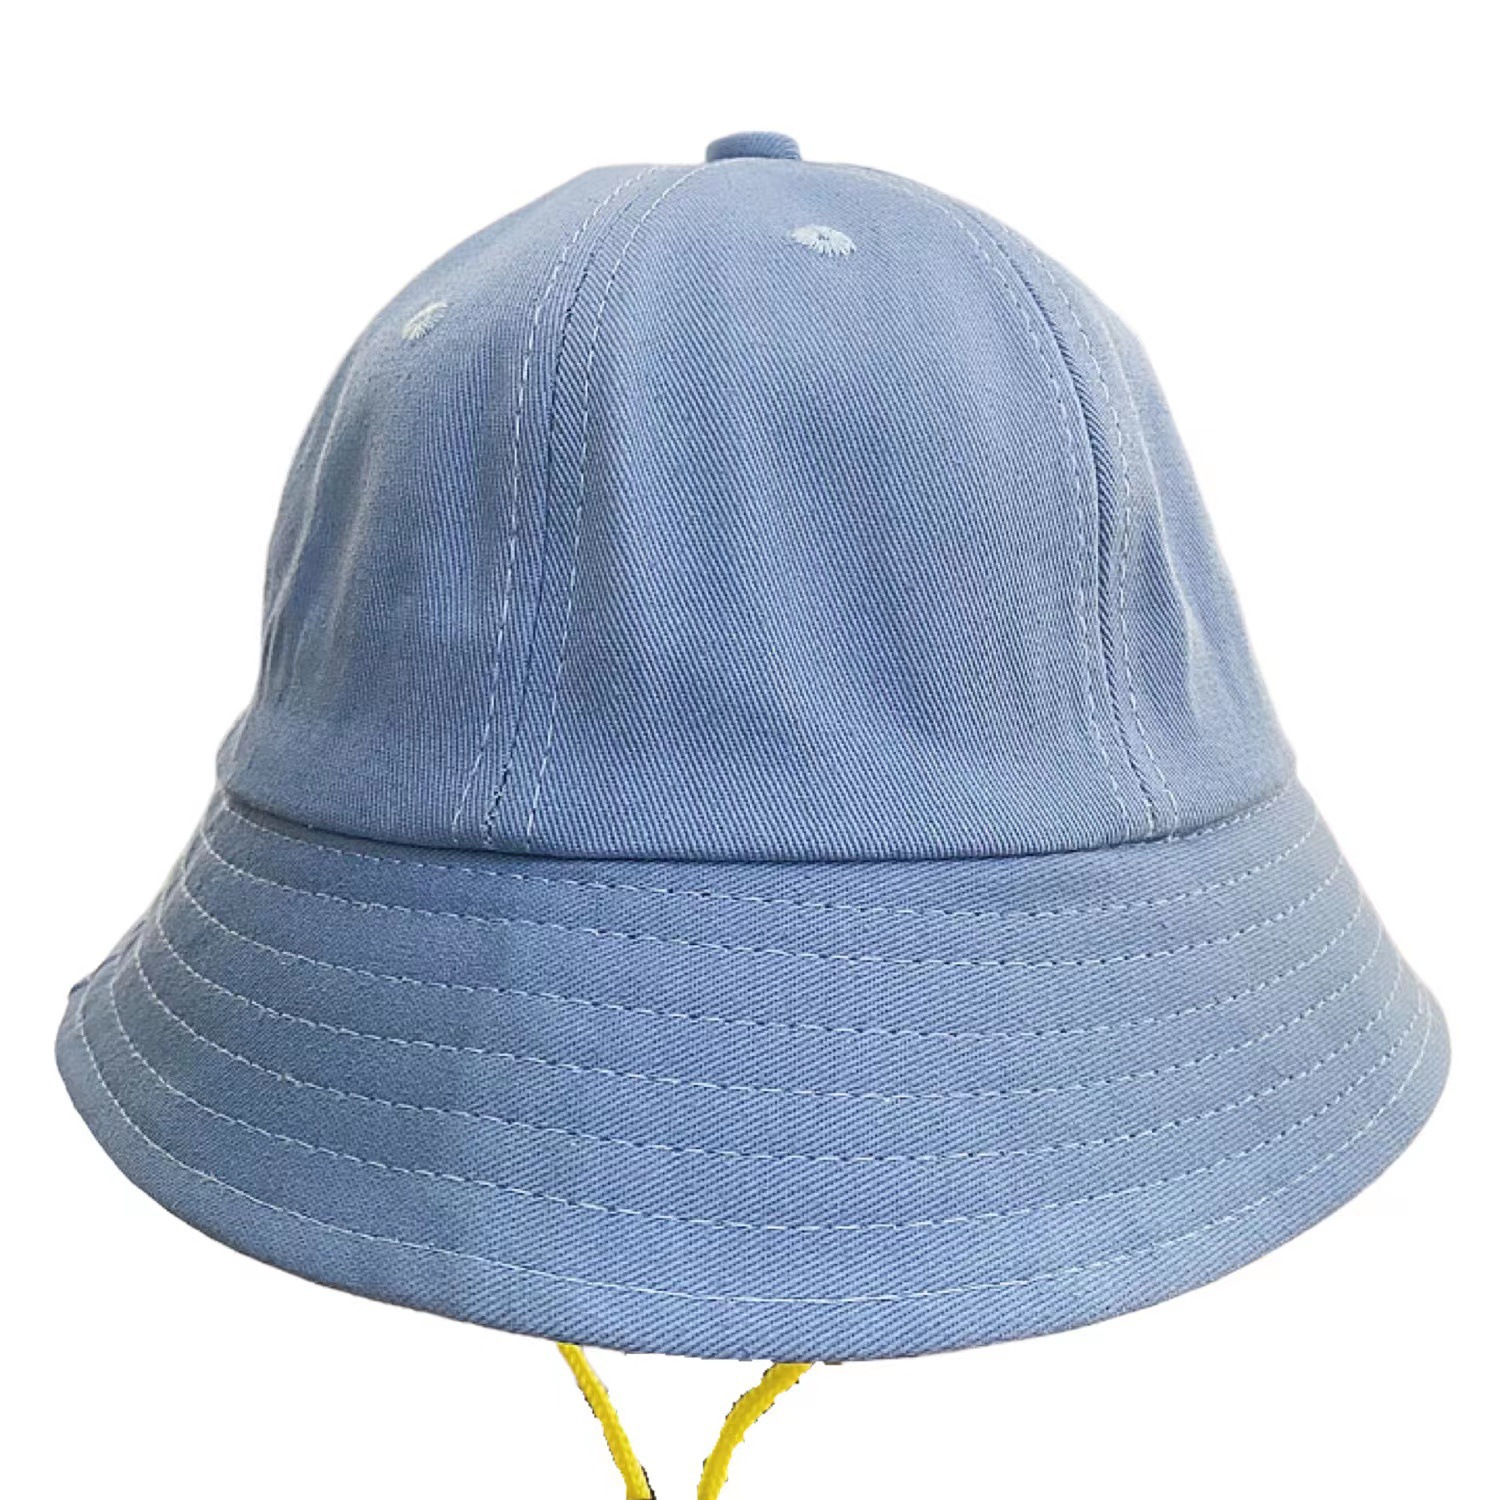 乐-帽子-205837